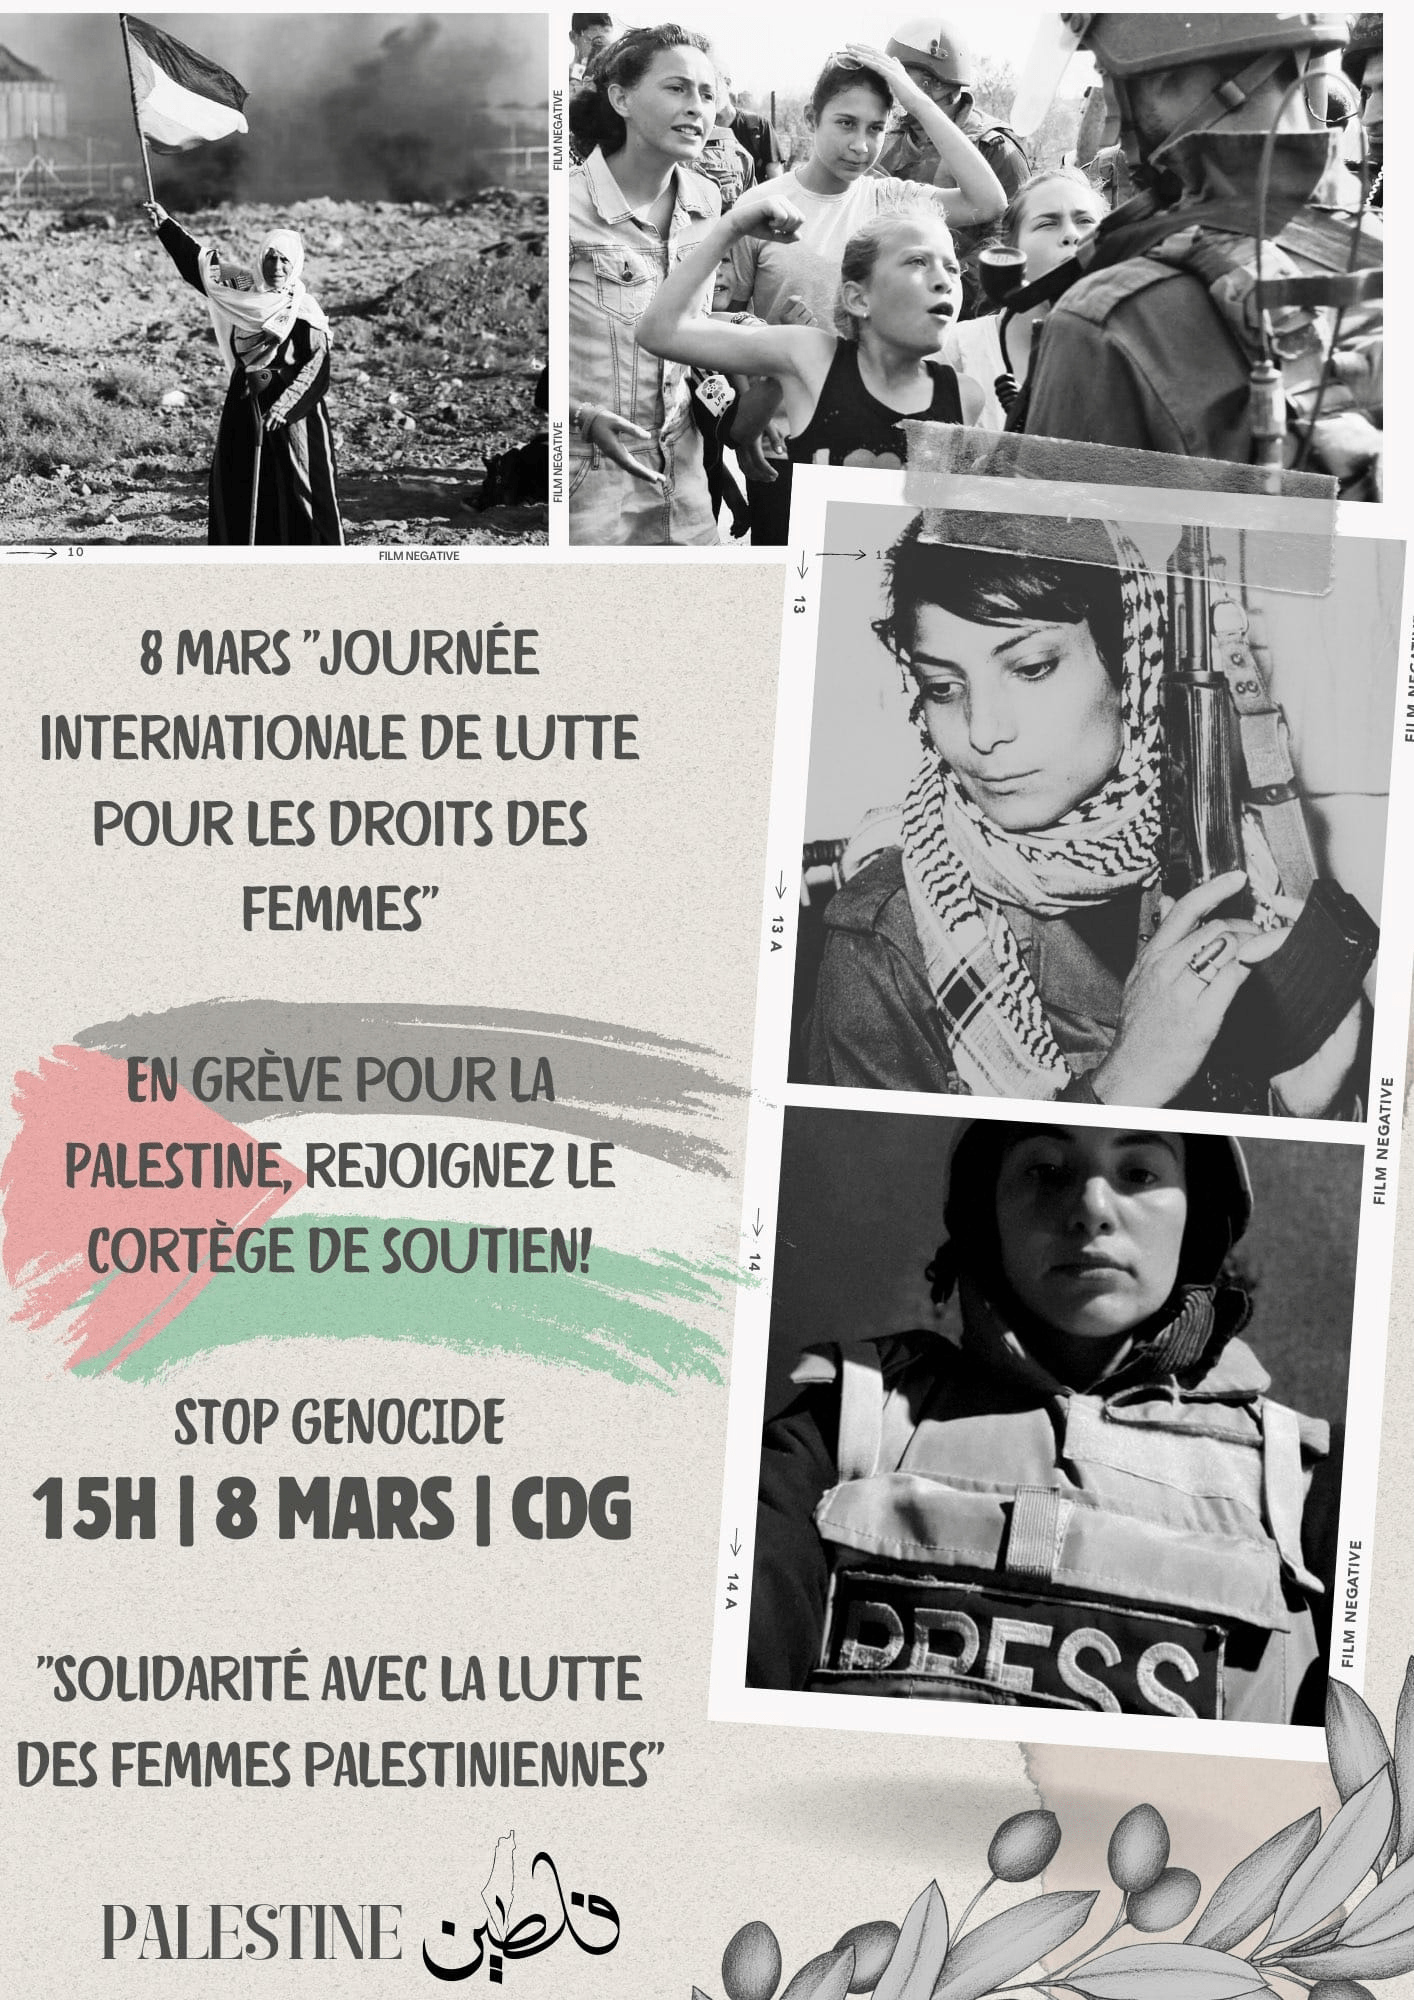 Manifestation et grève féministe du 8 mars : un cortège "Palestine" dans la manif !